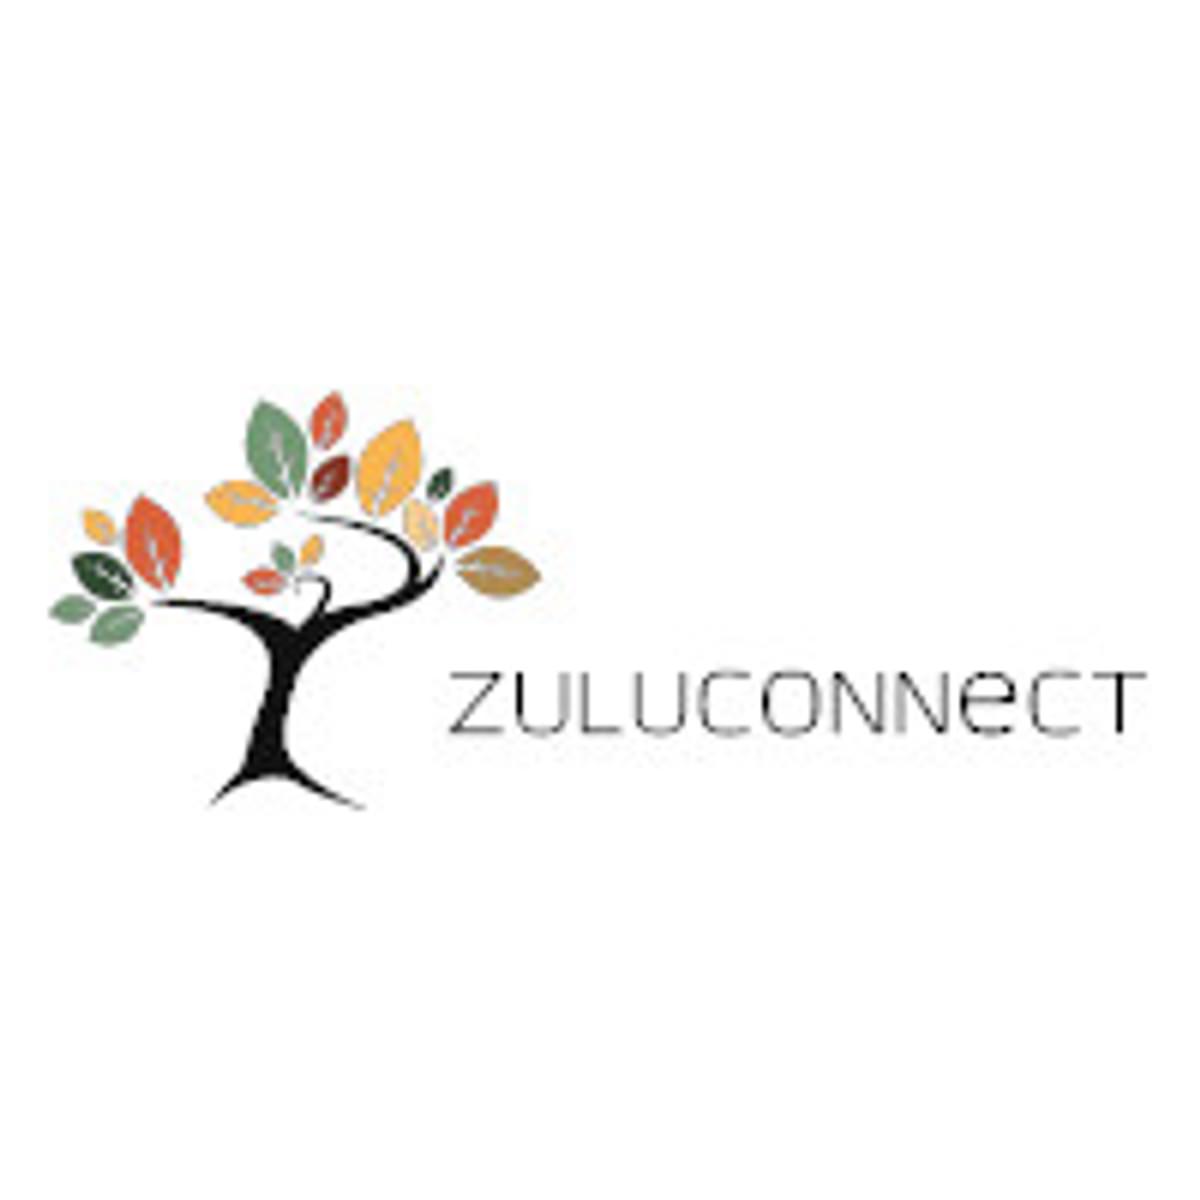 Online leeromgeving ZuluConnect opnieuw getroffen door storing image